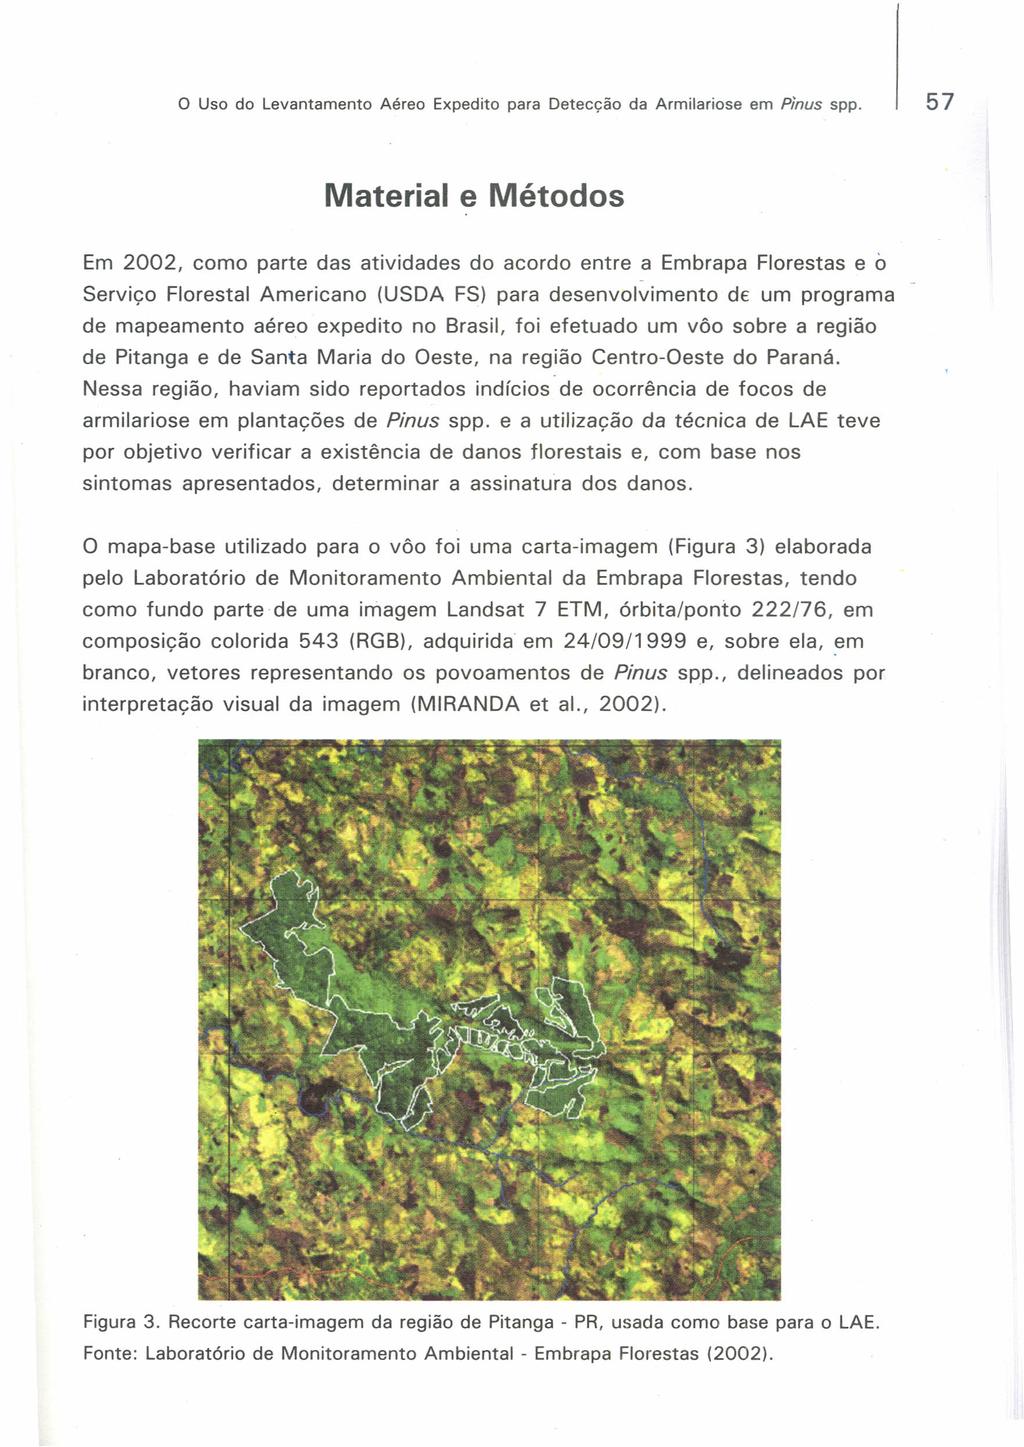 o Uso do Levantamento Aéreo Expedito para Detecção da Armilariose em Pinus spp.